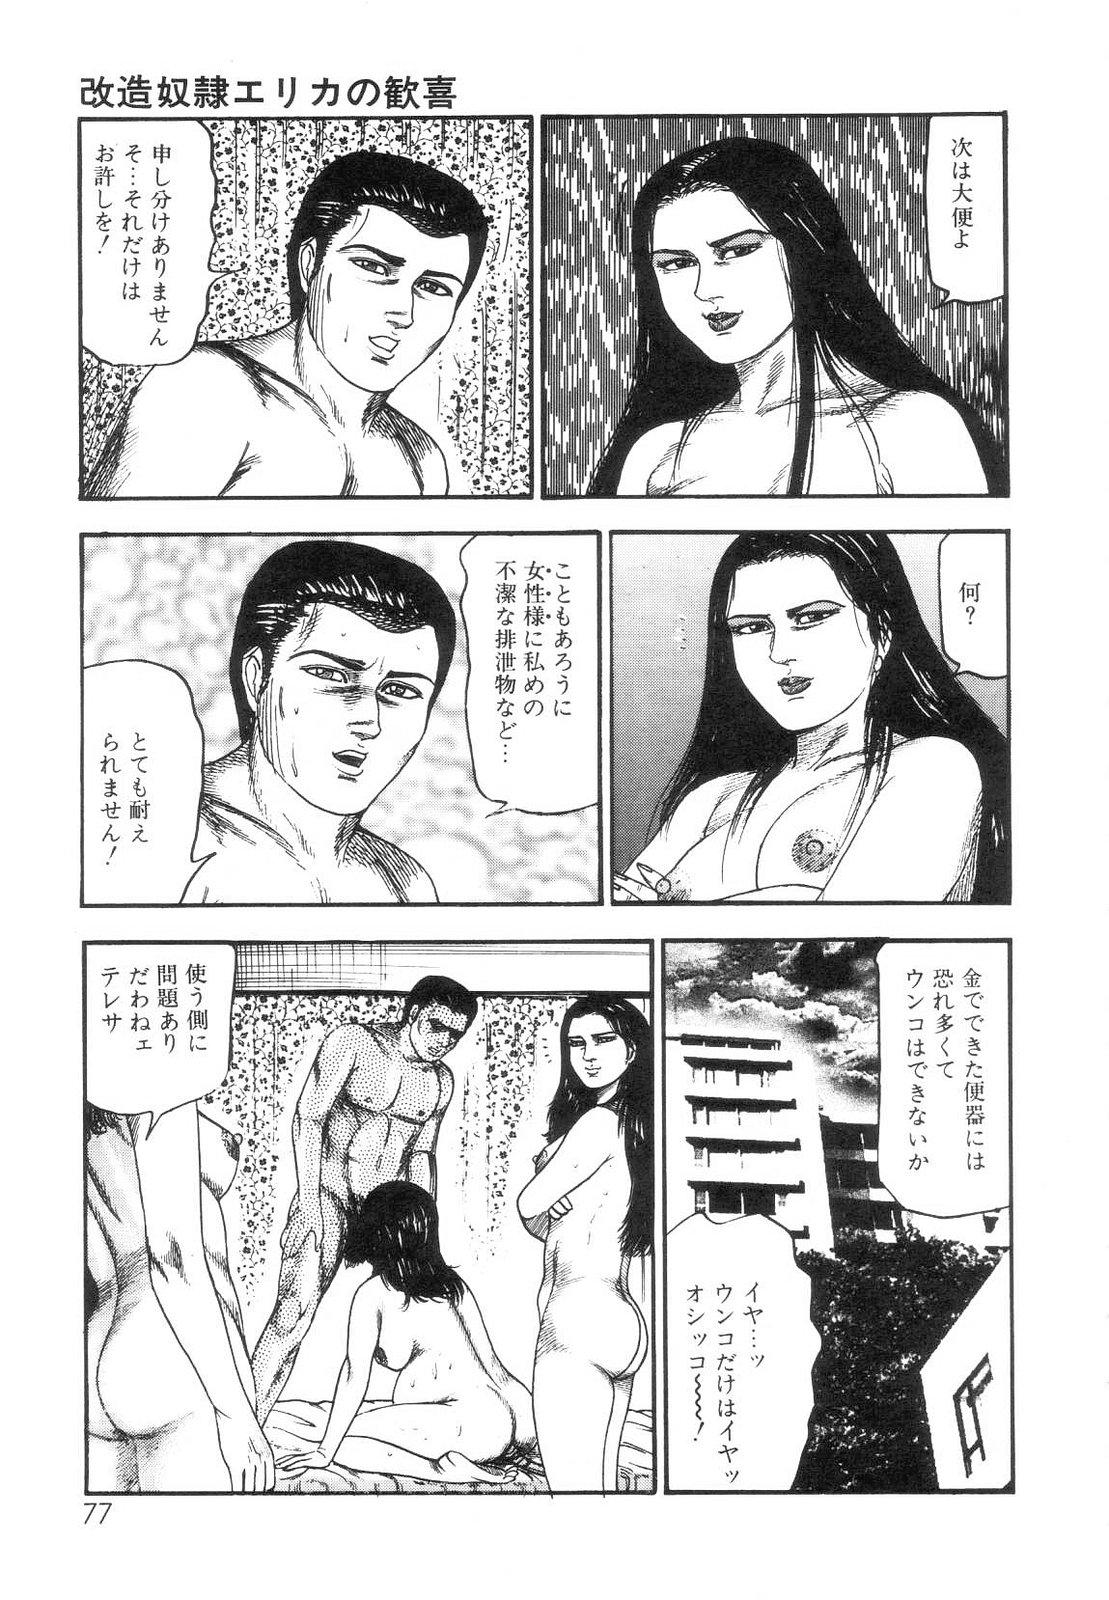 Shiro no Mokushiroku Vol. 7 - Shiiku Ningyou Erika no Shou 78